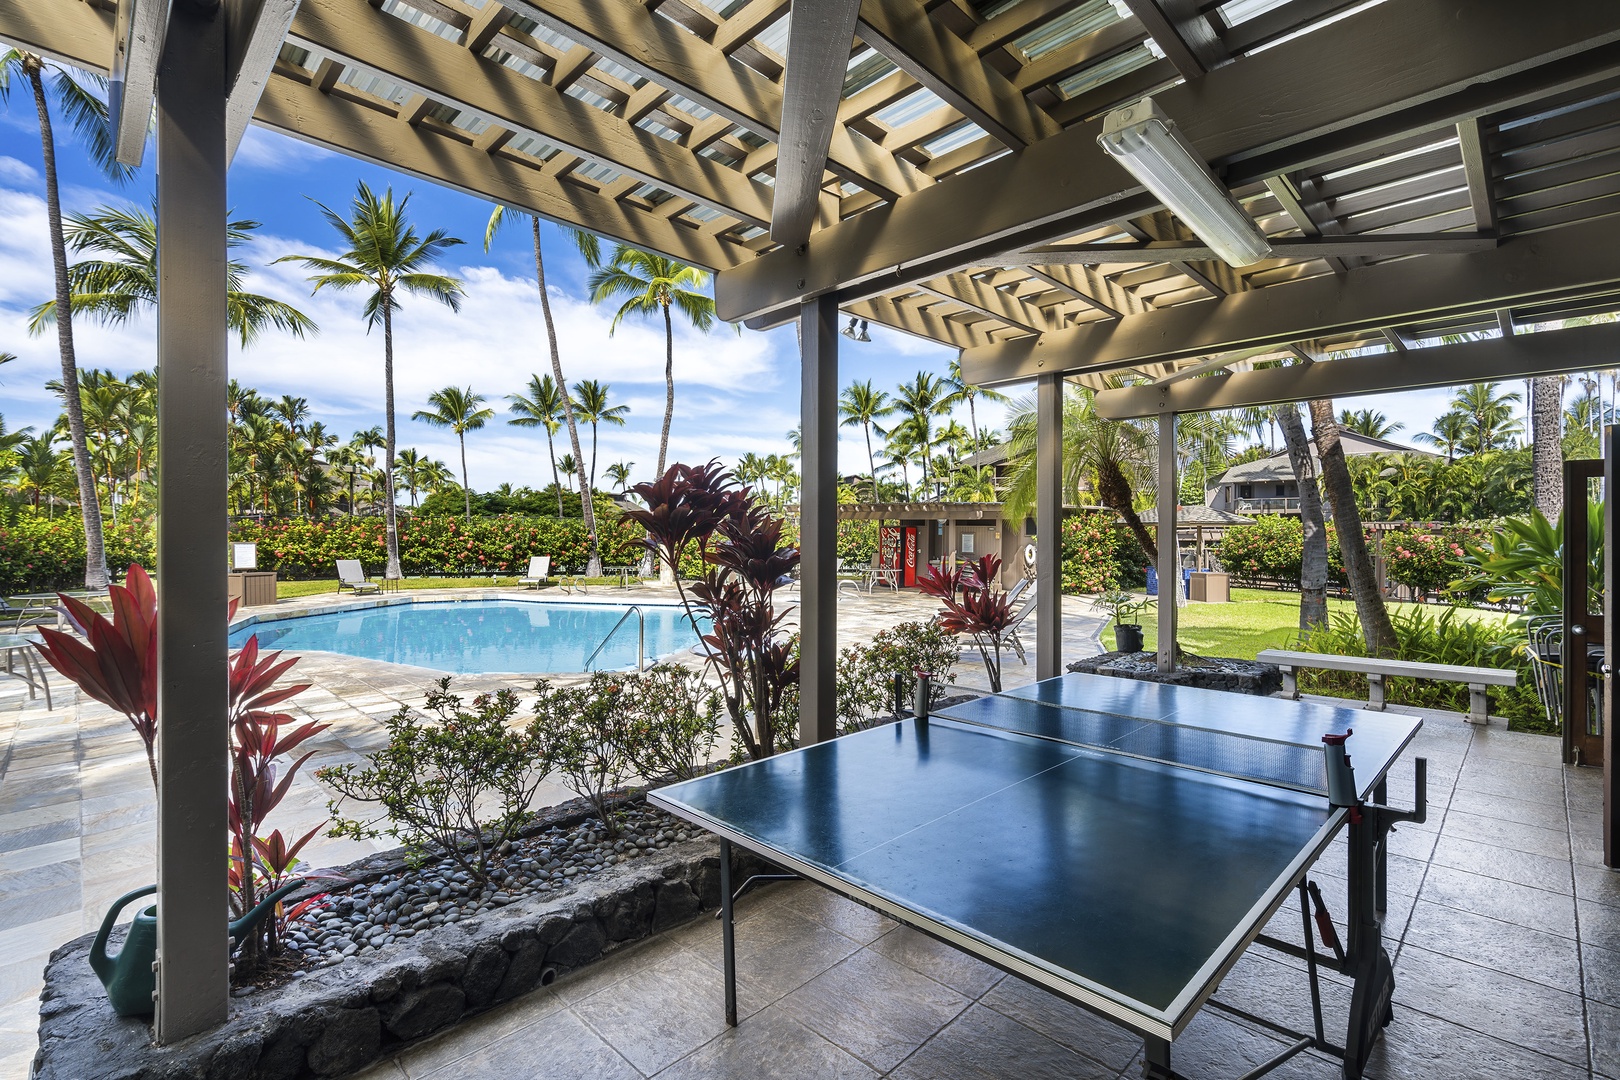 Kailua Kona Vacation Rentals, Kanaloa at Kona 1302 - Ping Pong tables on site!